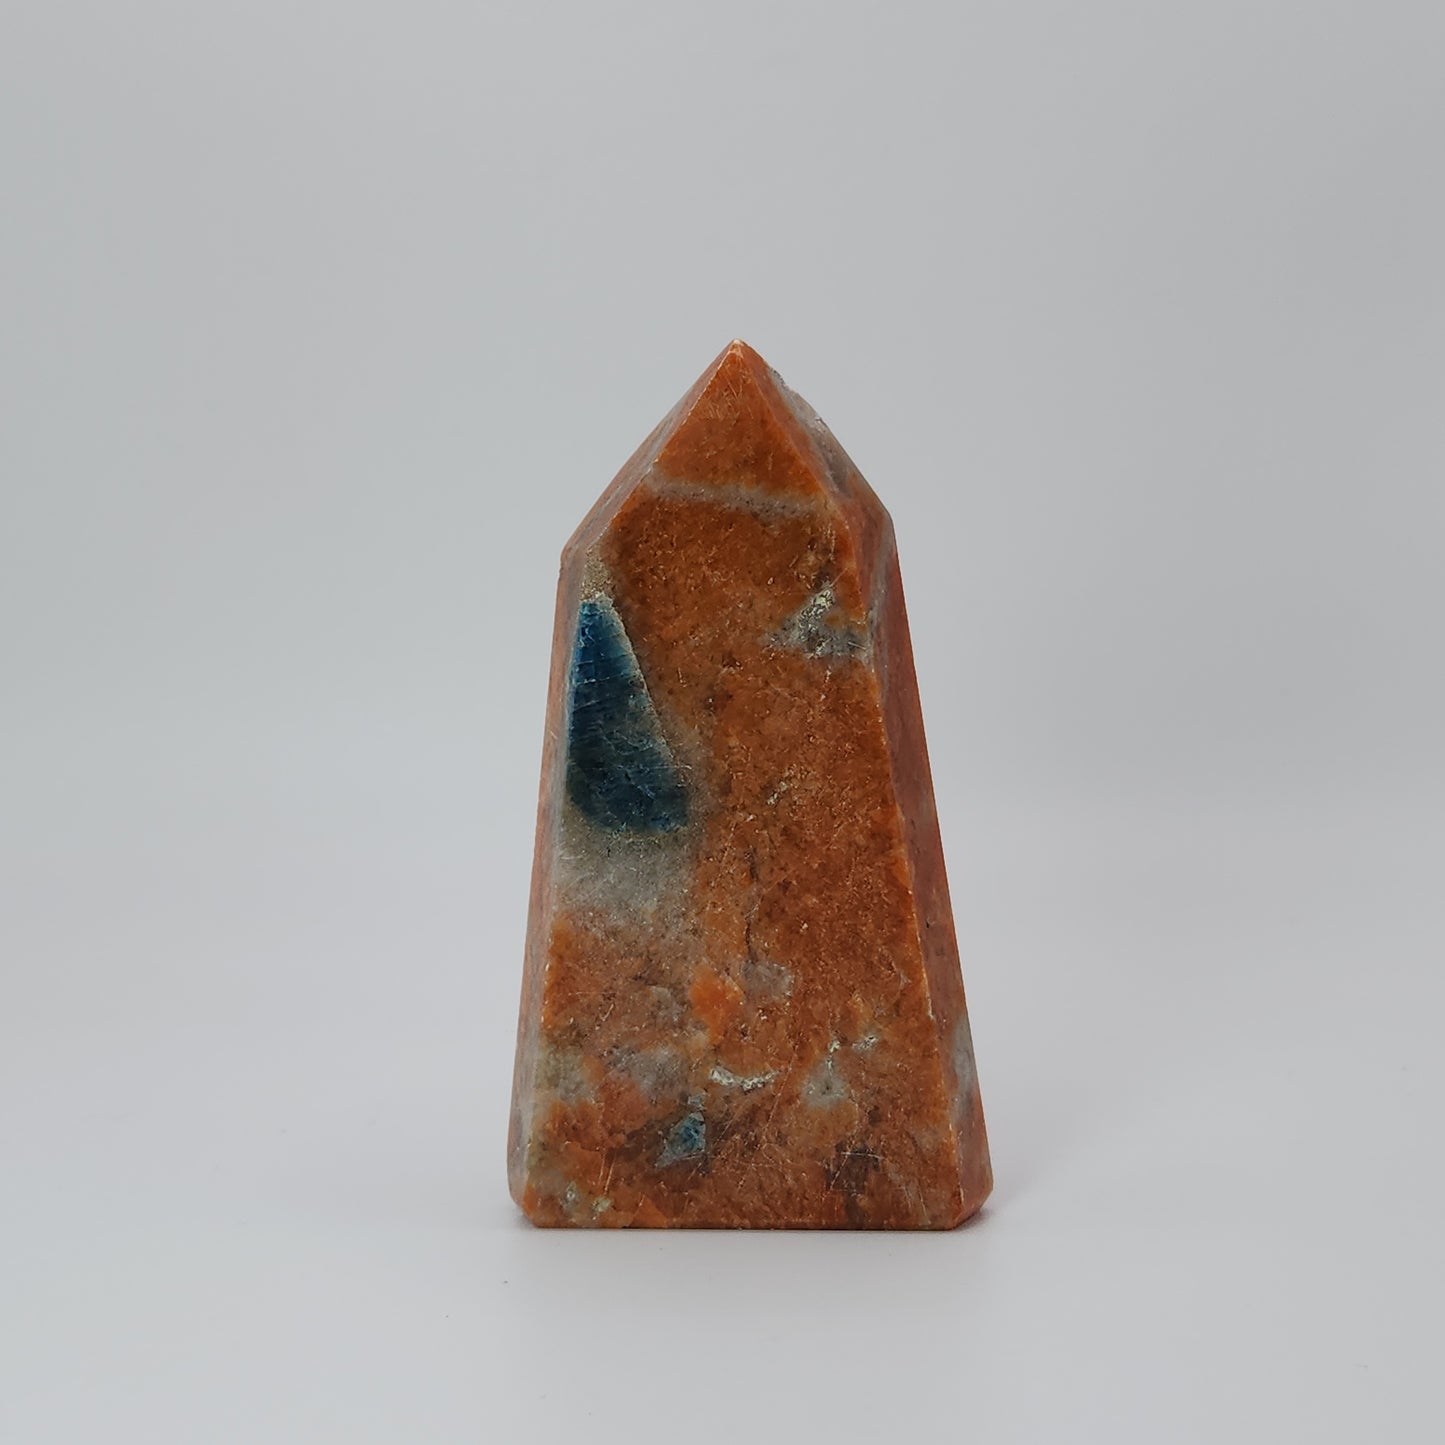 Blue Apatite in Orange Calcite Tower